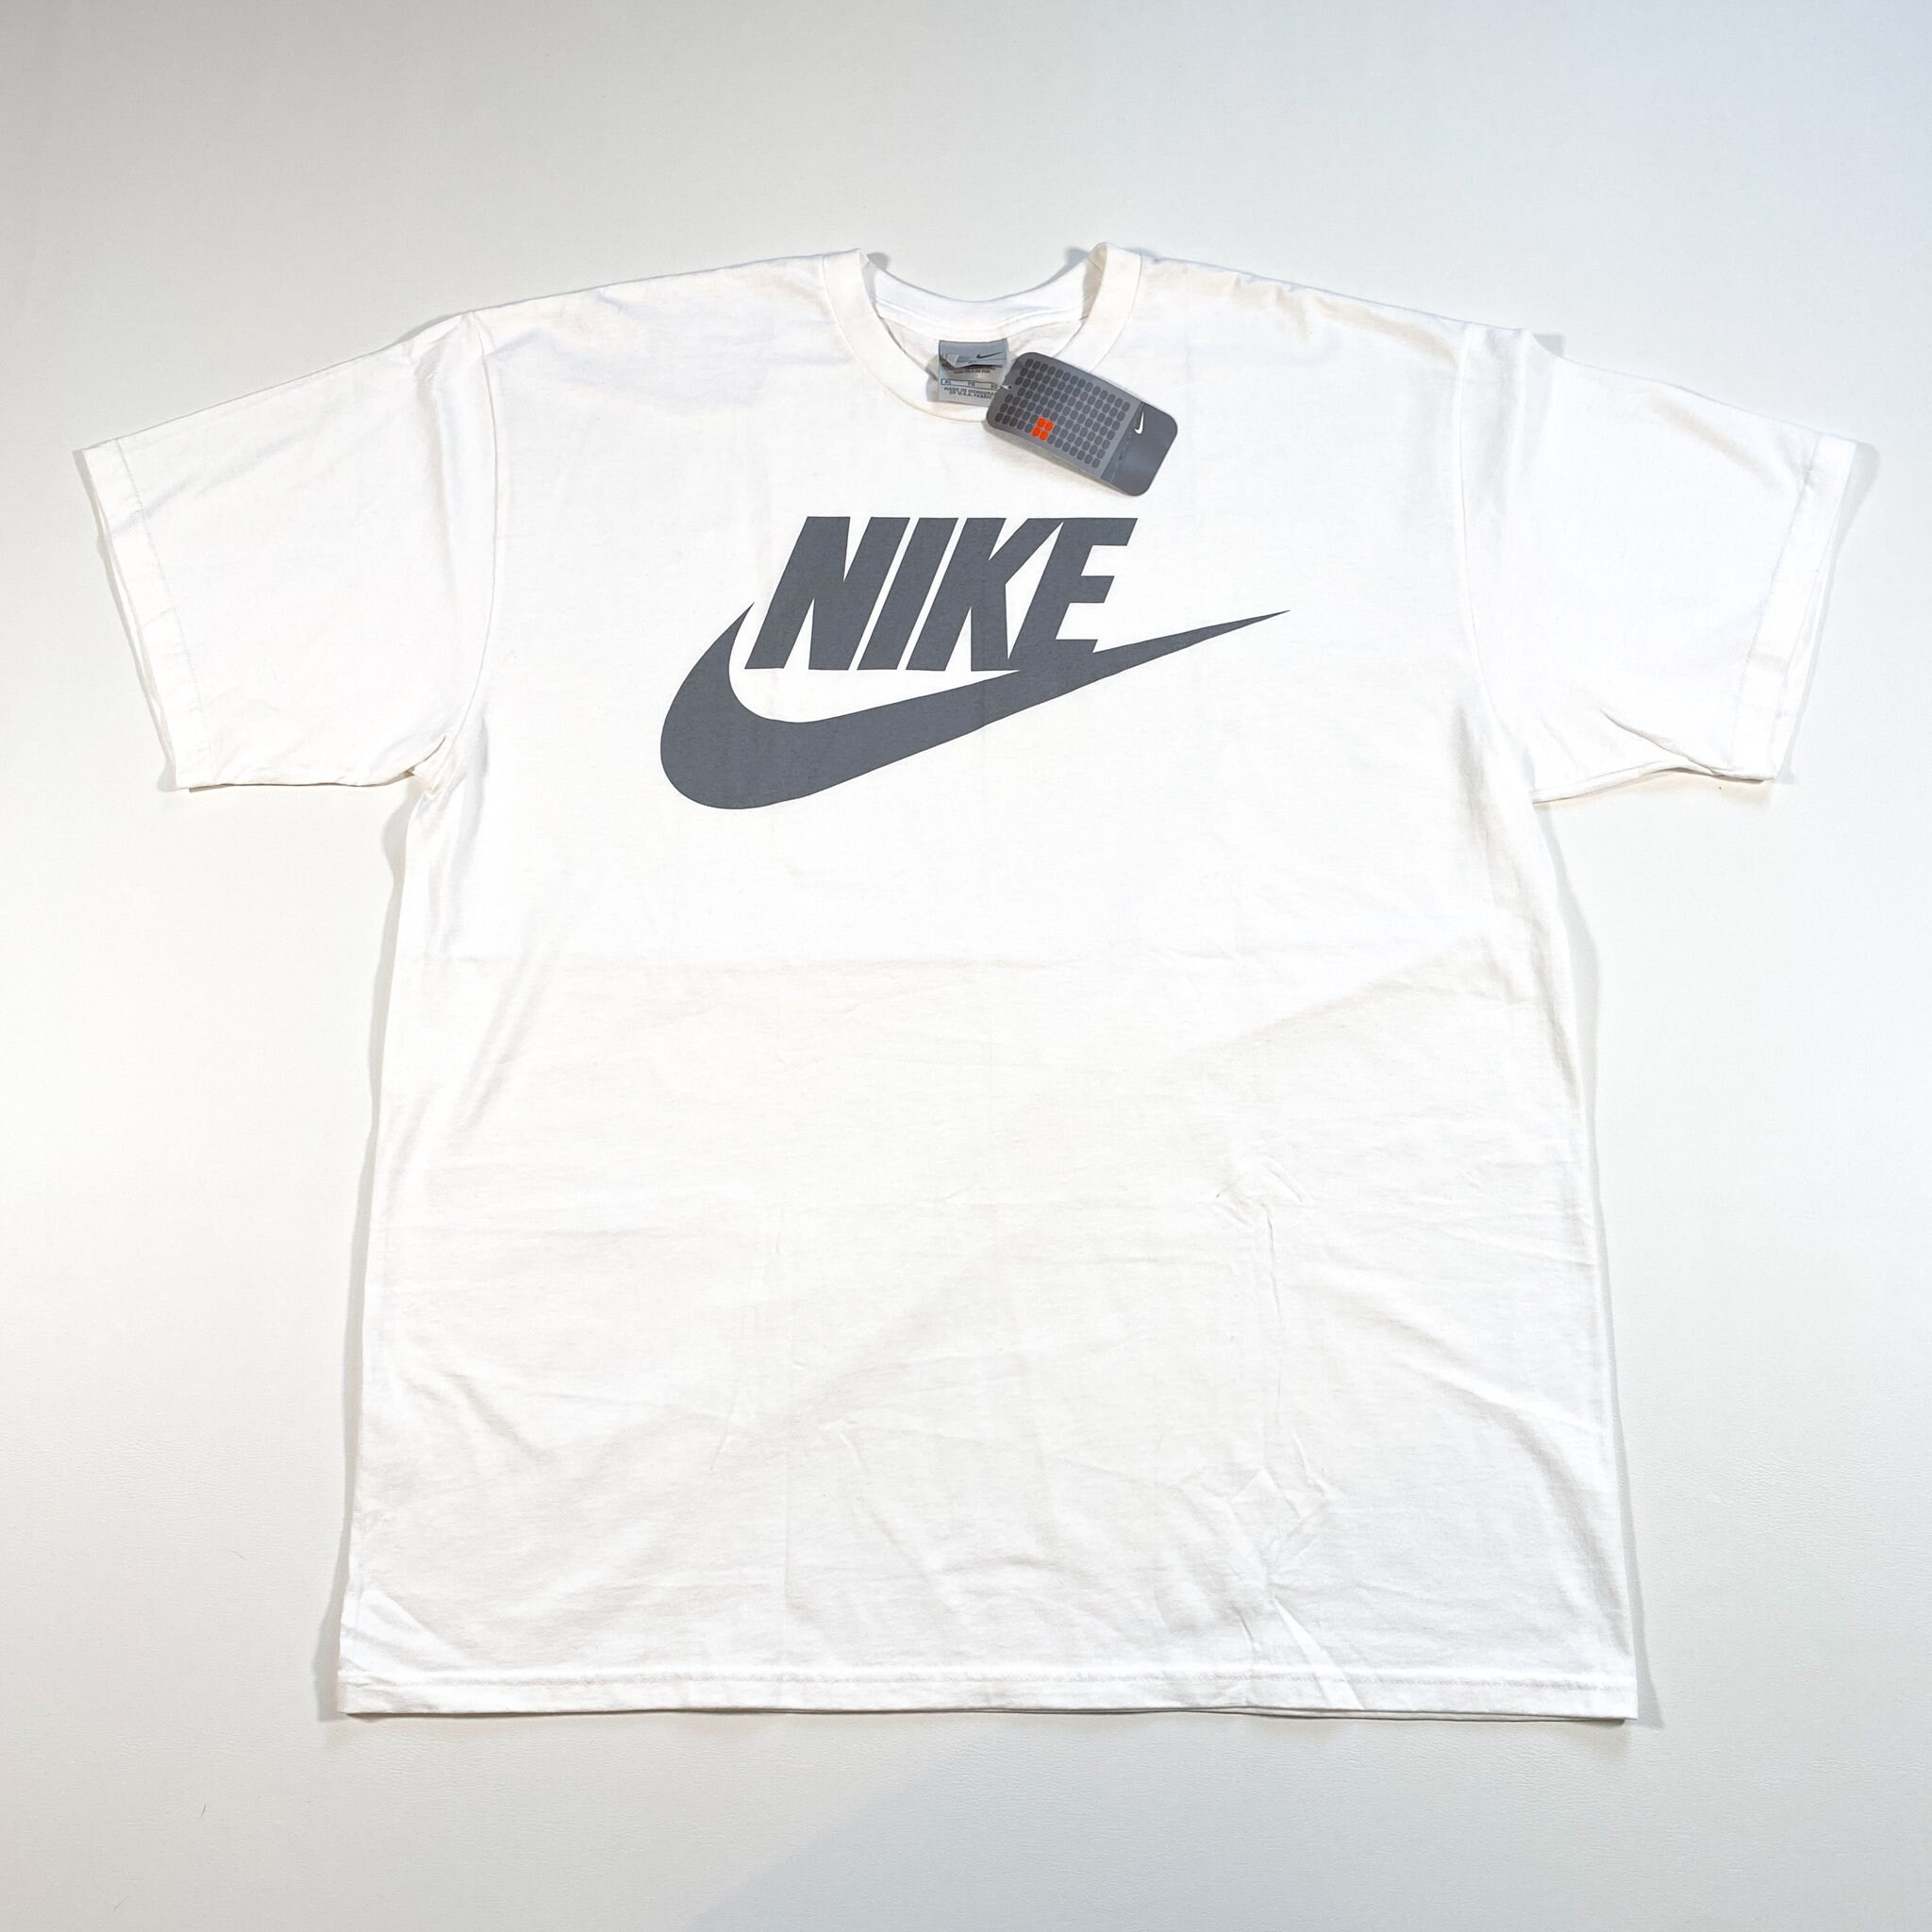 Nike Shirt - Etsy Hong Kong